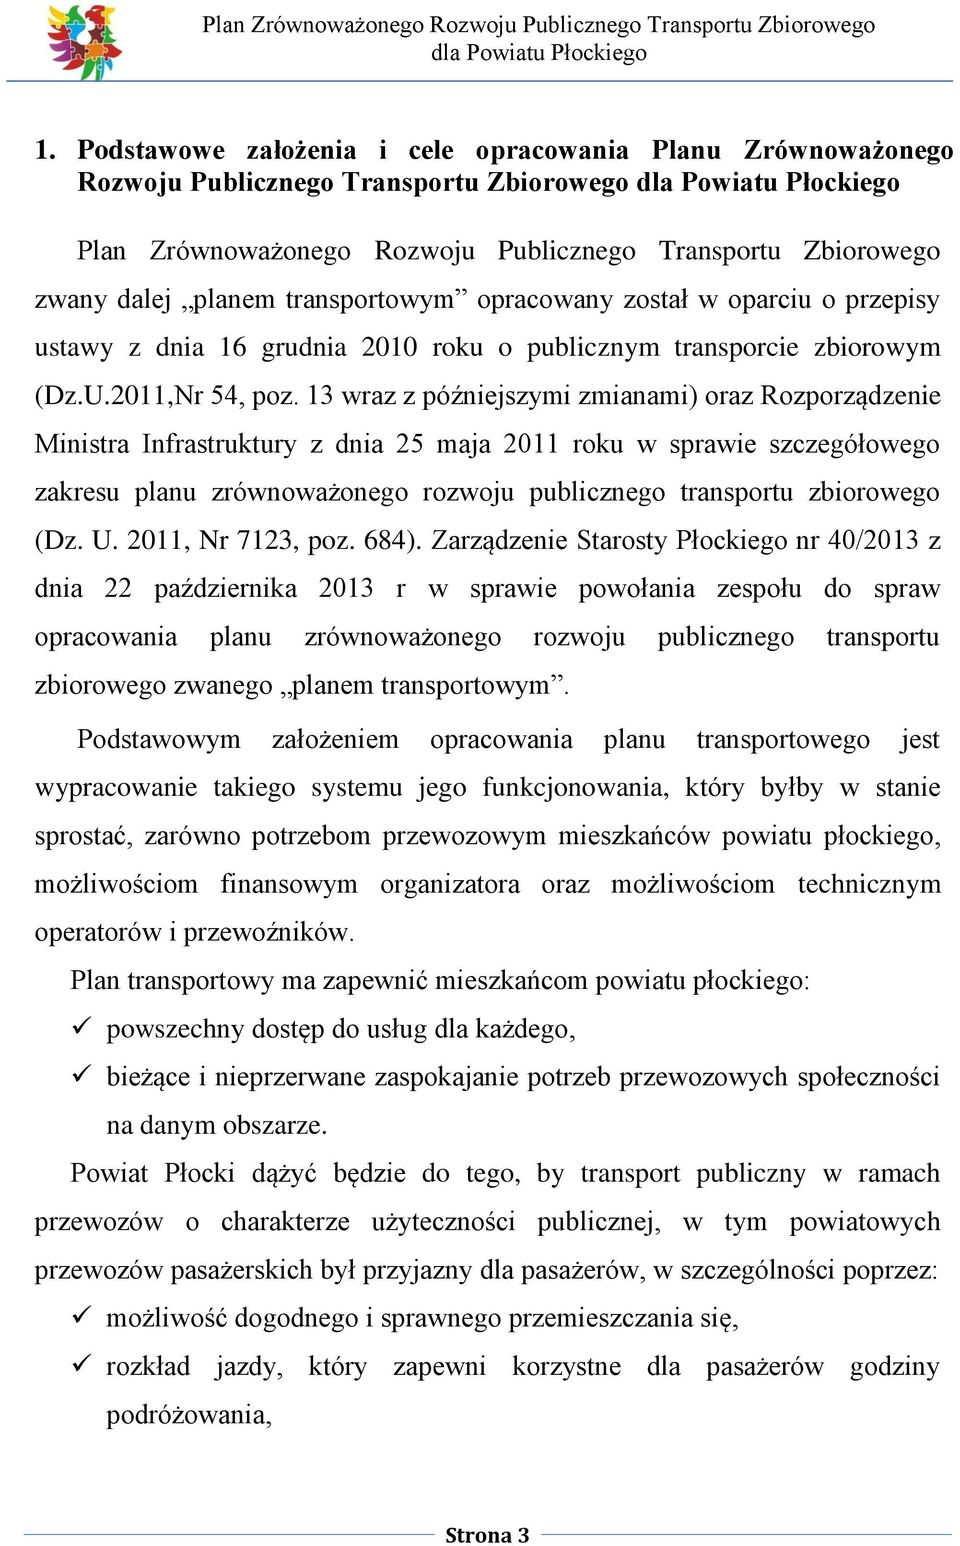 13 wraz z późniejszymi zmianami) oraz Rozporządzenie Ministra Infrastruktury z dnia 25 maja 2011 roku w sprawie szczegółowego zakresu planu zrównoważonego rozwoju publicznego transportu zbiorowego